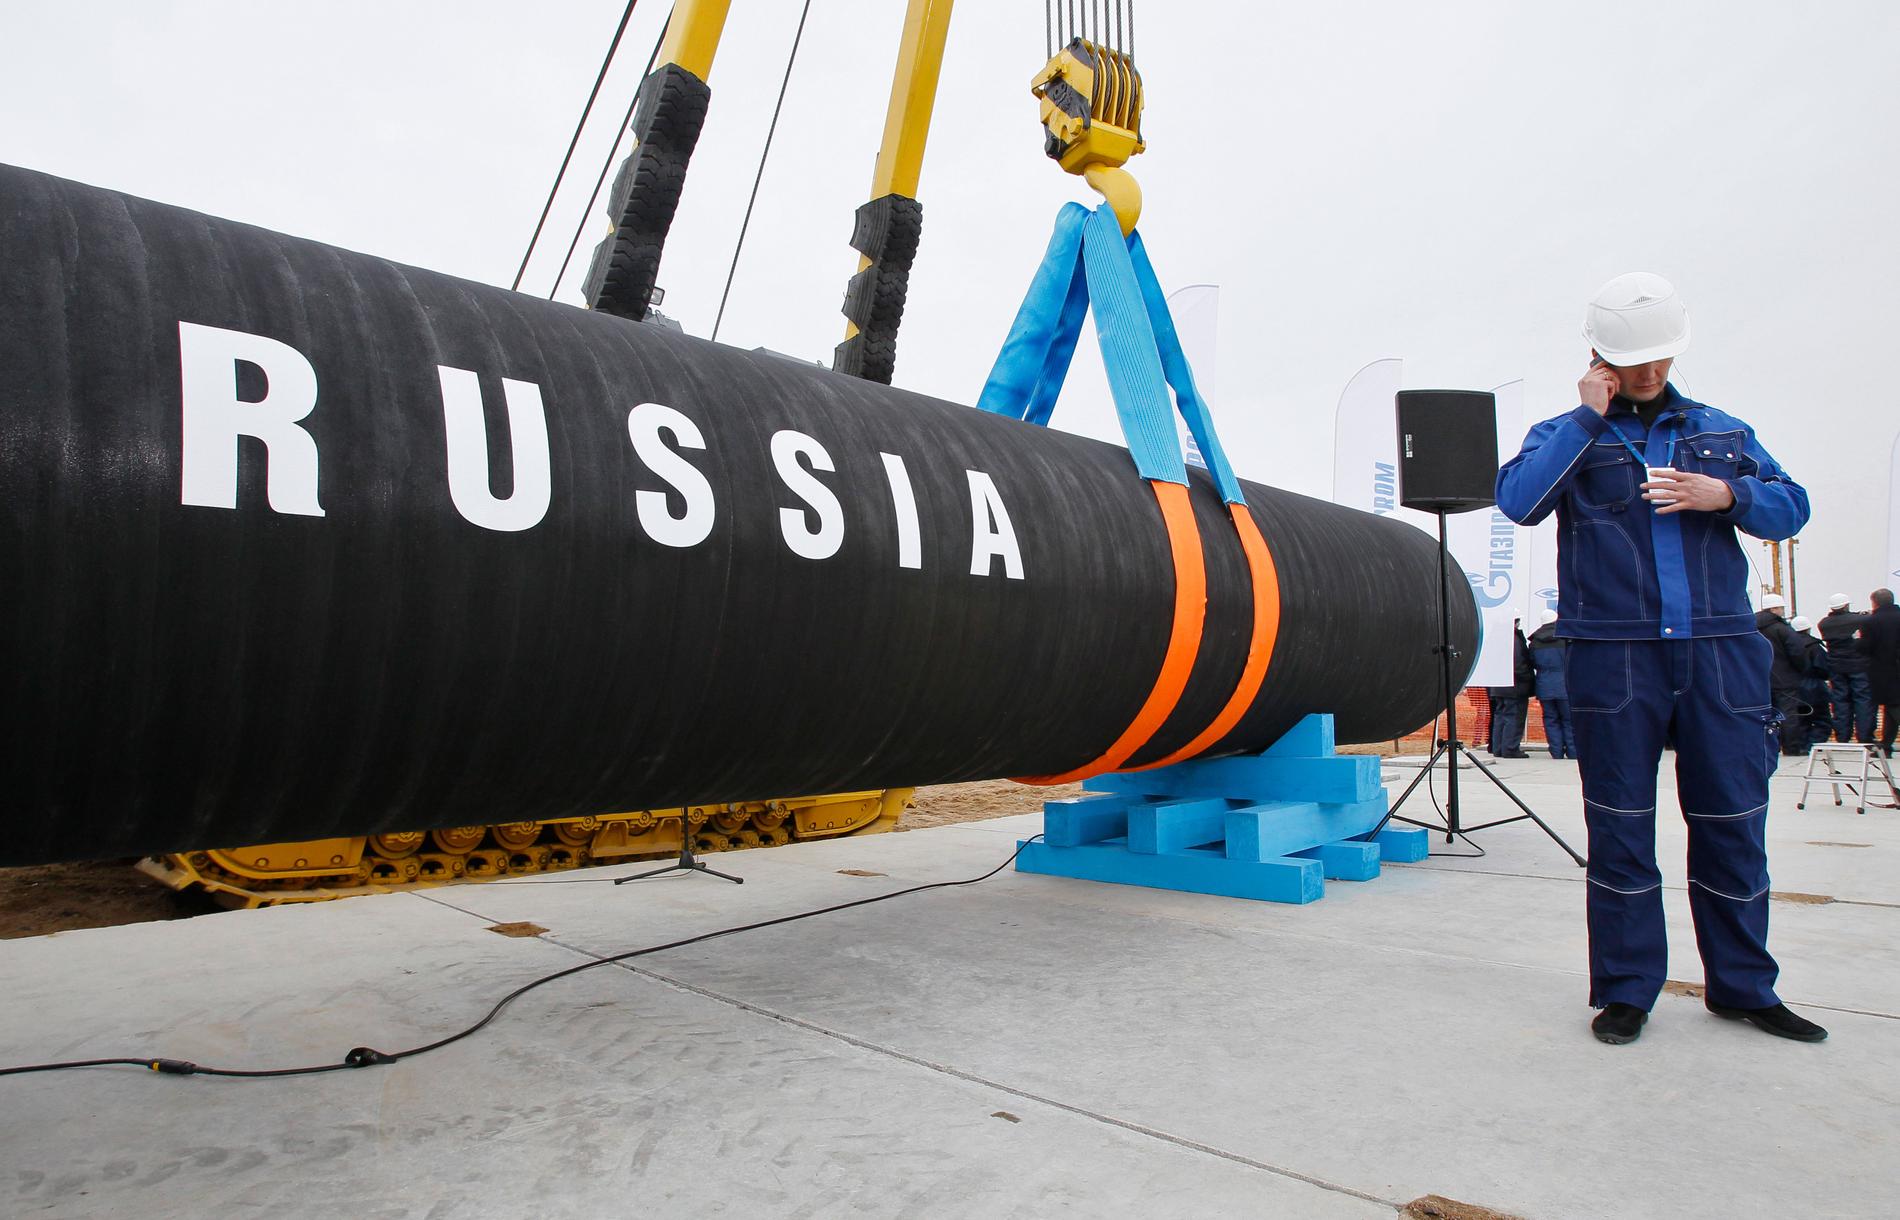 Bygget av gasledningen Nord Stream påbörjades 2010. Nu diskuteras en fortsättning av projektet med fördubblad kapacitet: Nord Stream 2.